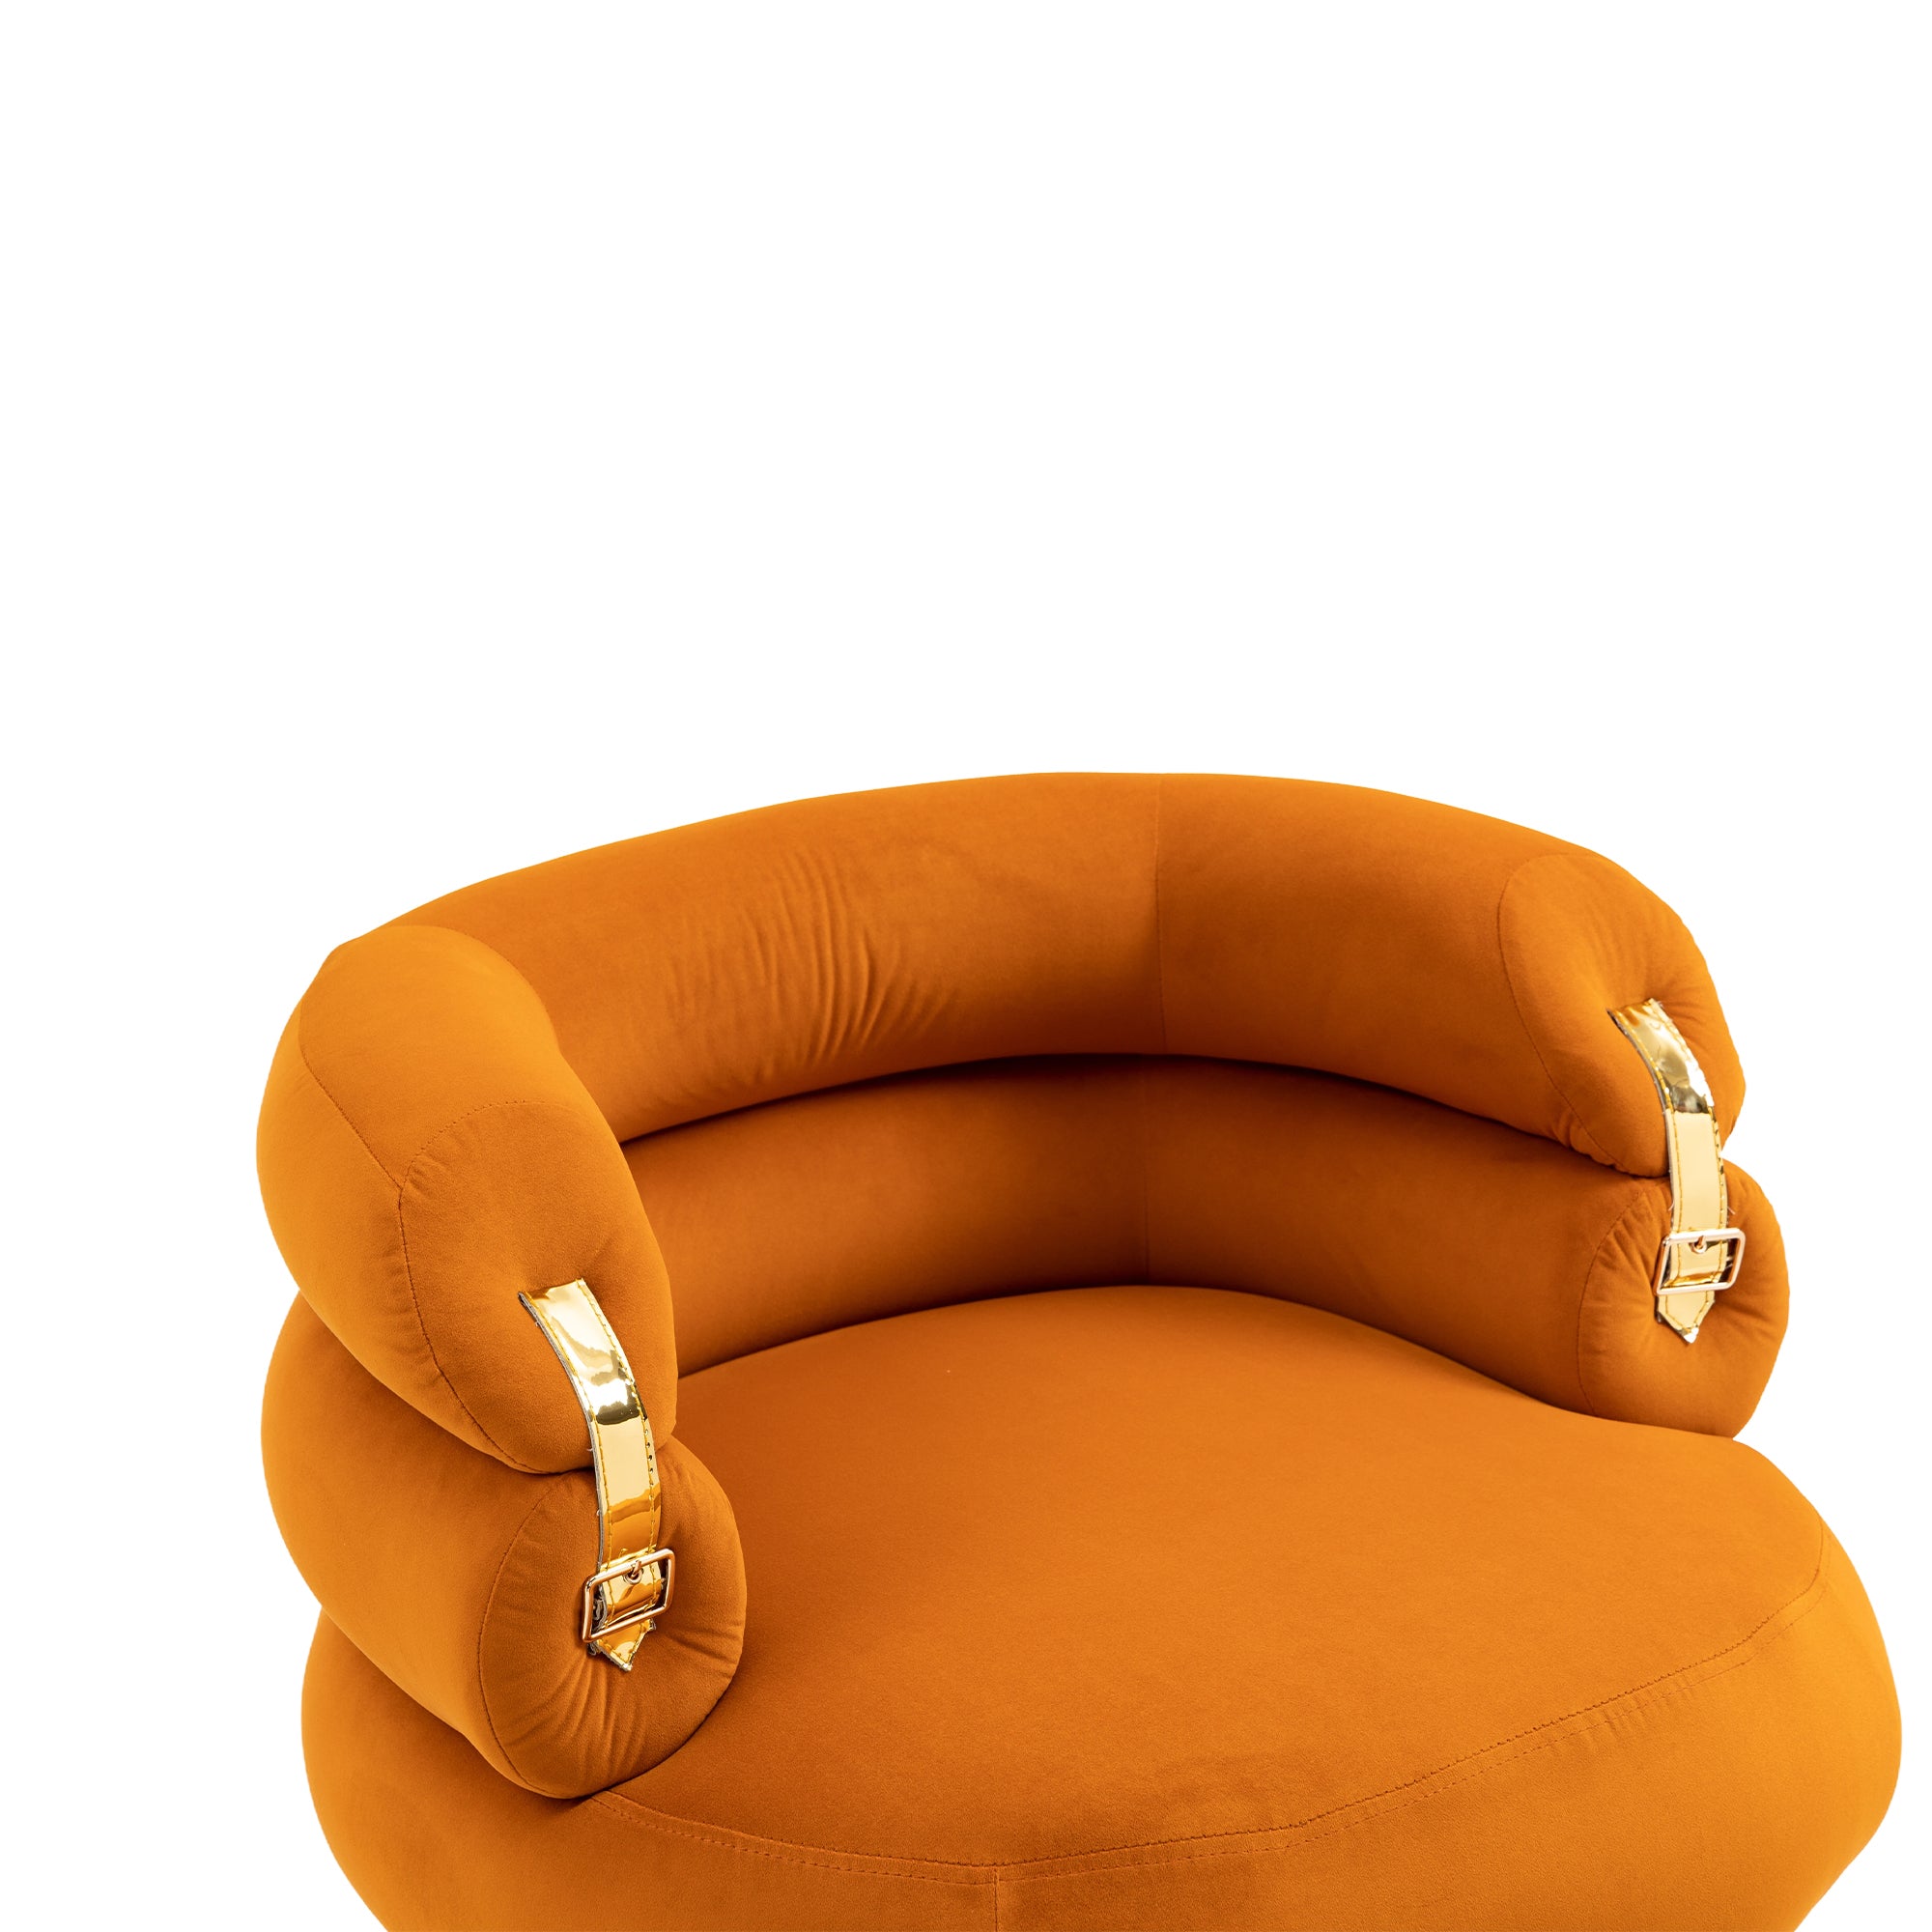 COOLMORE Velvet Accent Chair Modern Upholstered orange-velvet